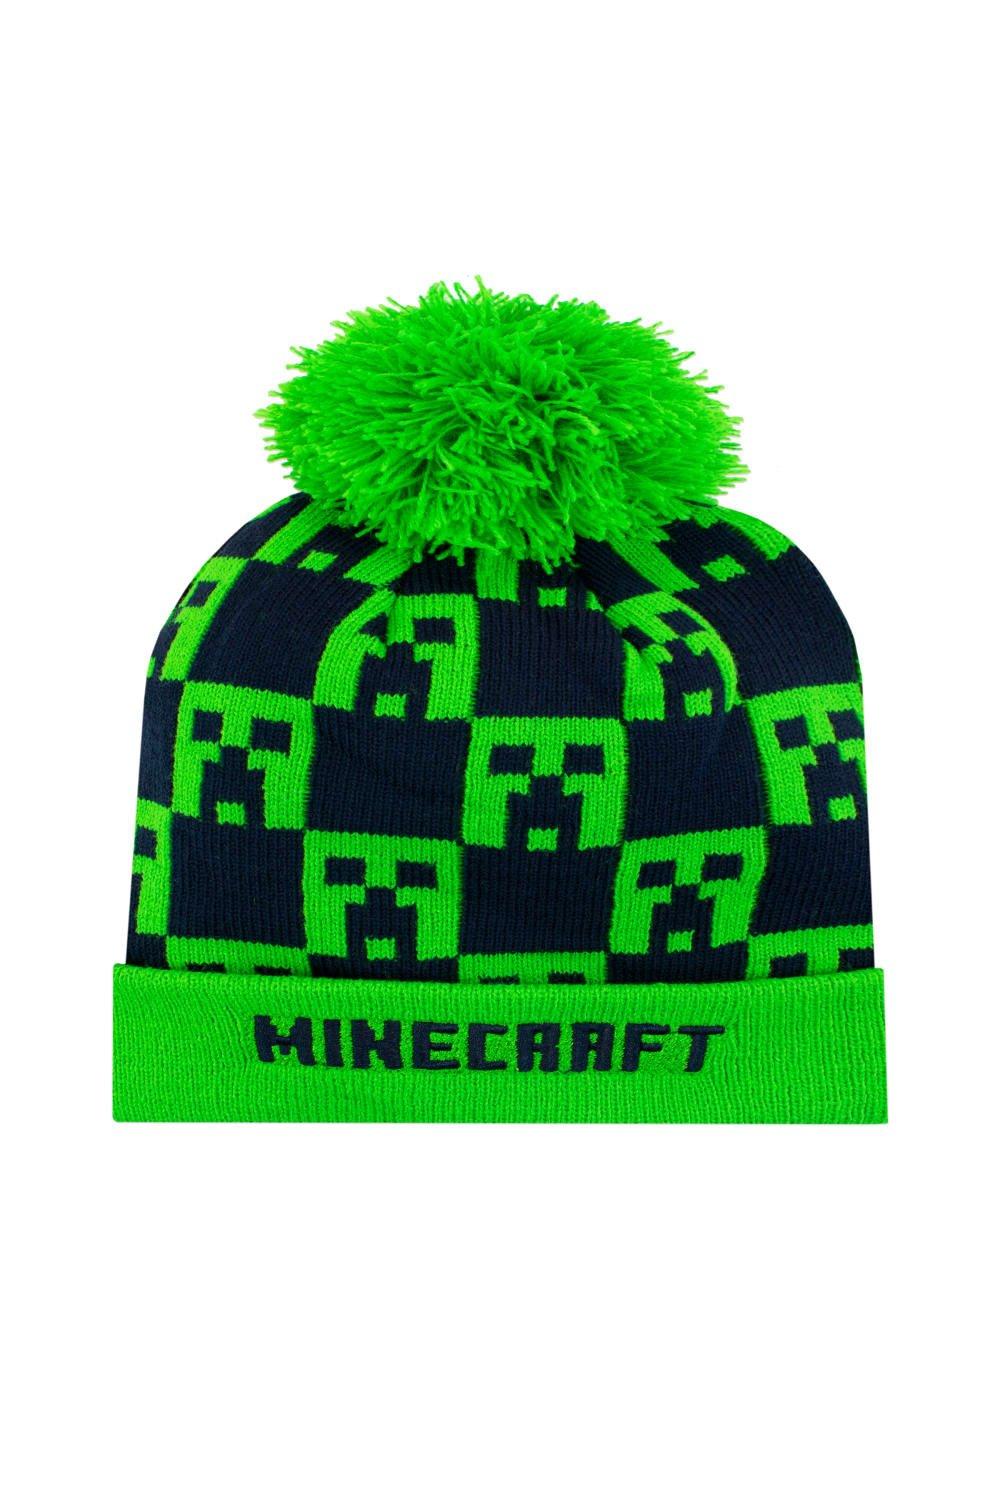 Детская шапка с помпоном Minecraft, черный шапка шарф комплект с помпоном мультяшная детская зимняя шапка для мальчиков и девочек детская теплая трикотажная детская шапка